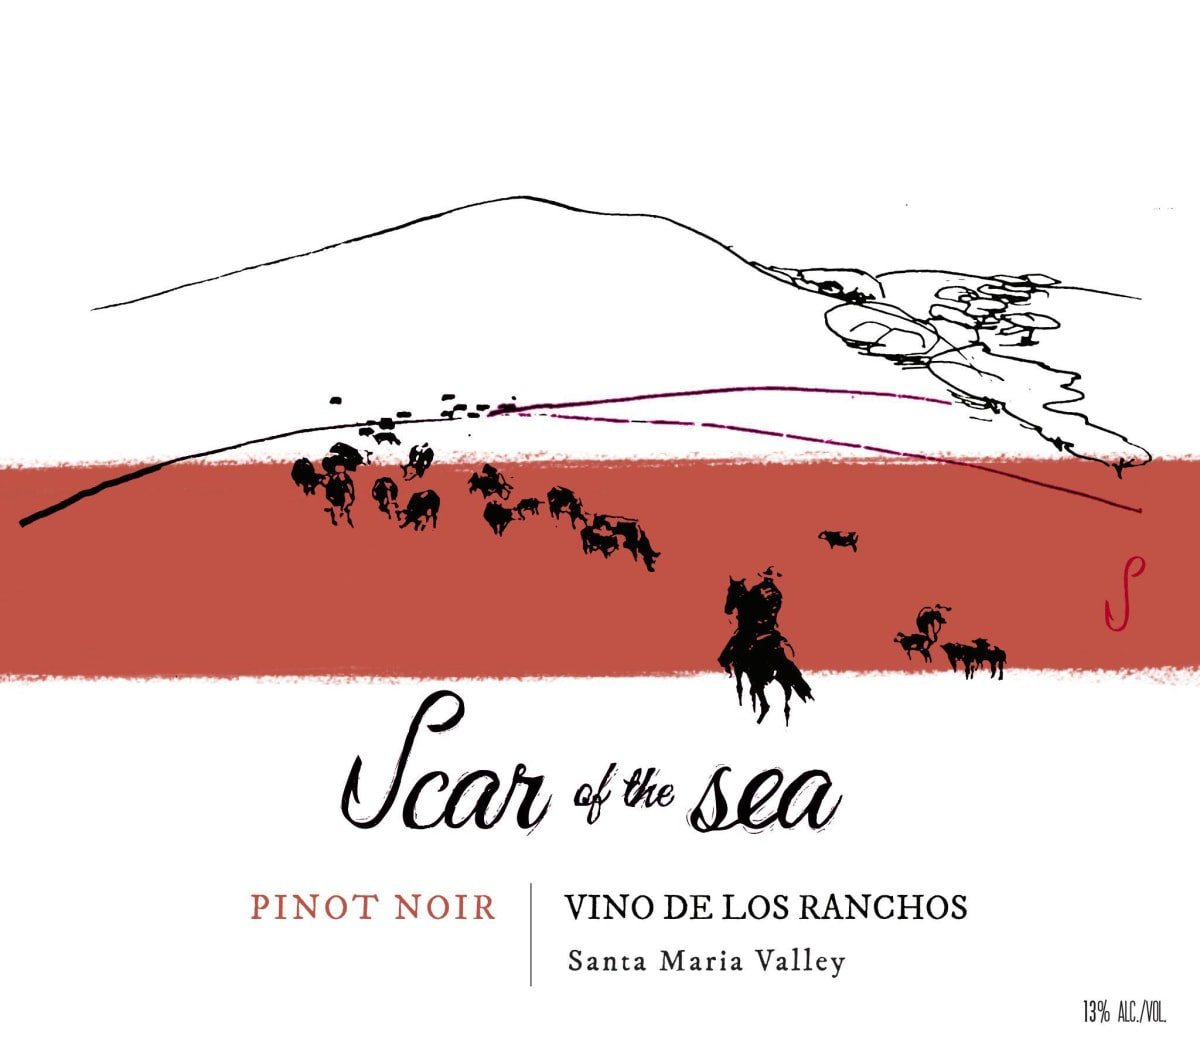 Scar of the Sea 2023 Vinos de los Ranchos Pinot Noir